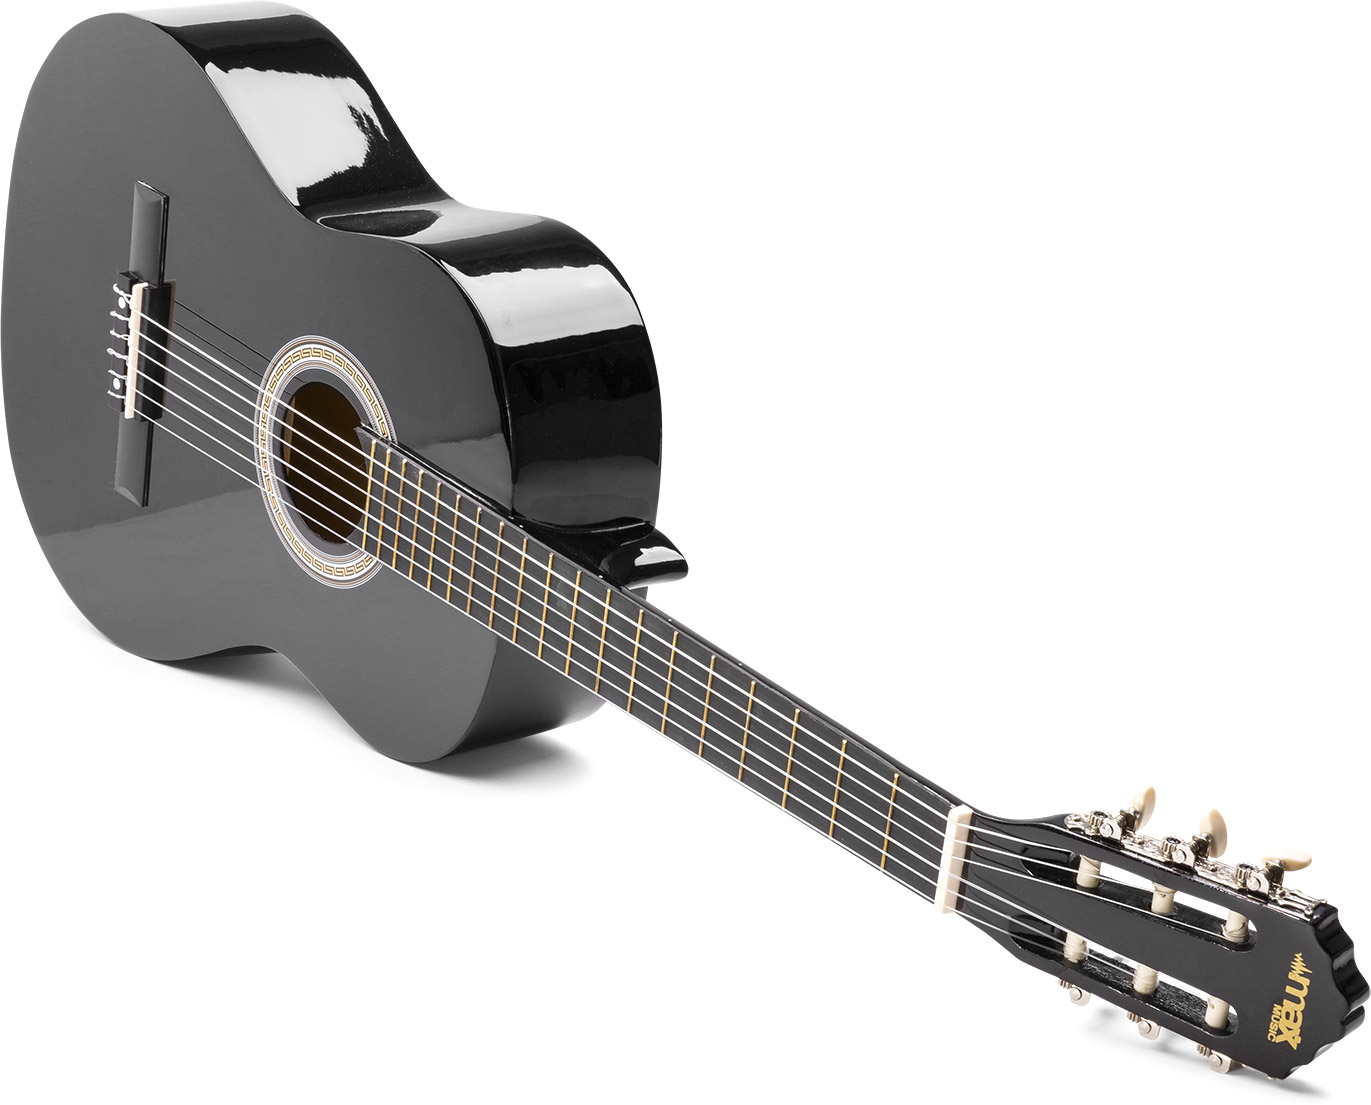 Câblage et connectique Tronios MAX SoloArt - Guitare classique adulte  débutant - Noir, livré avec un tuner, un sac de transport, des médiators et  une sangle